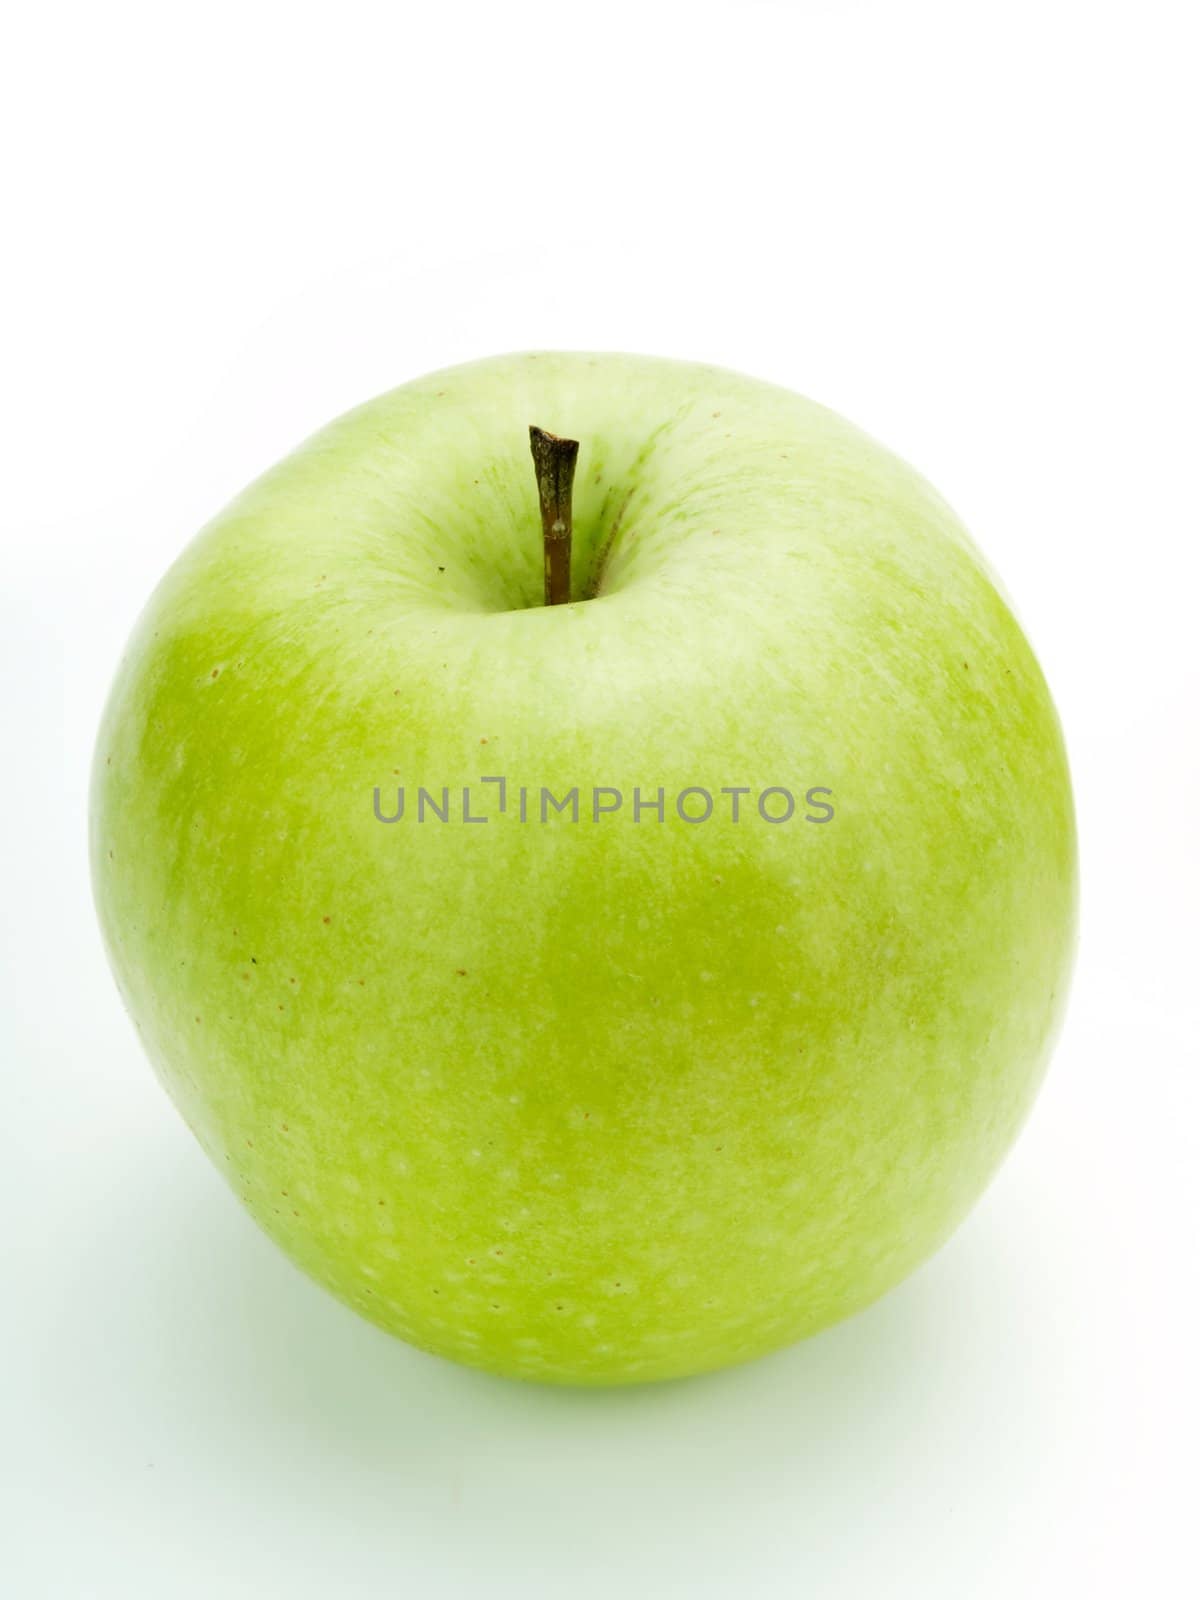 Green apple by henrischmit